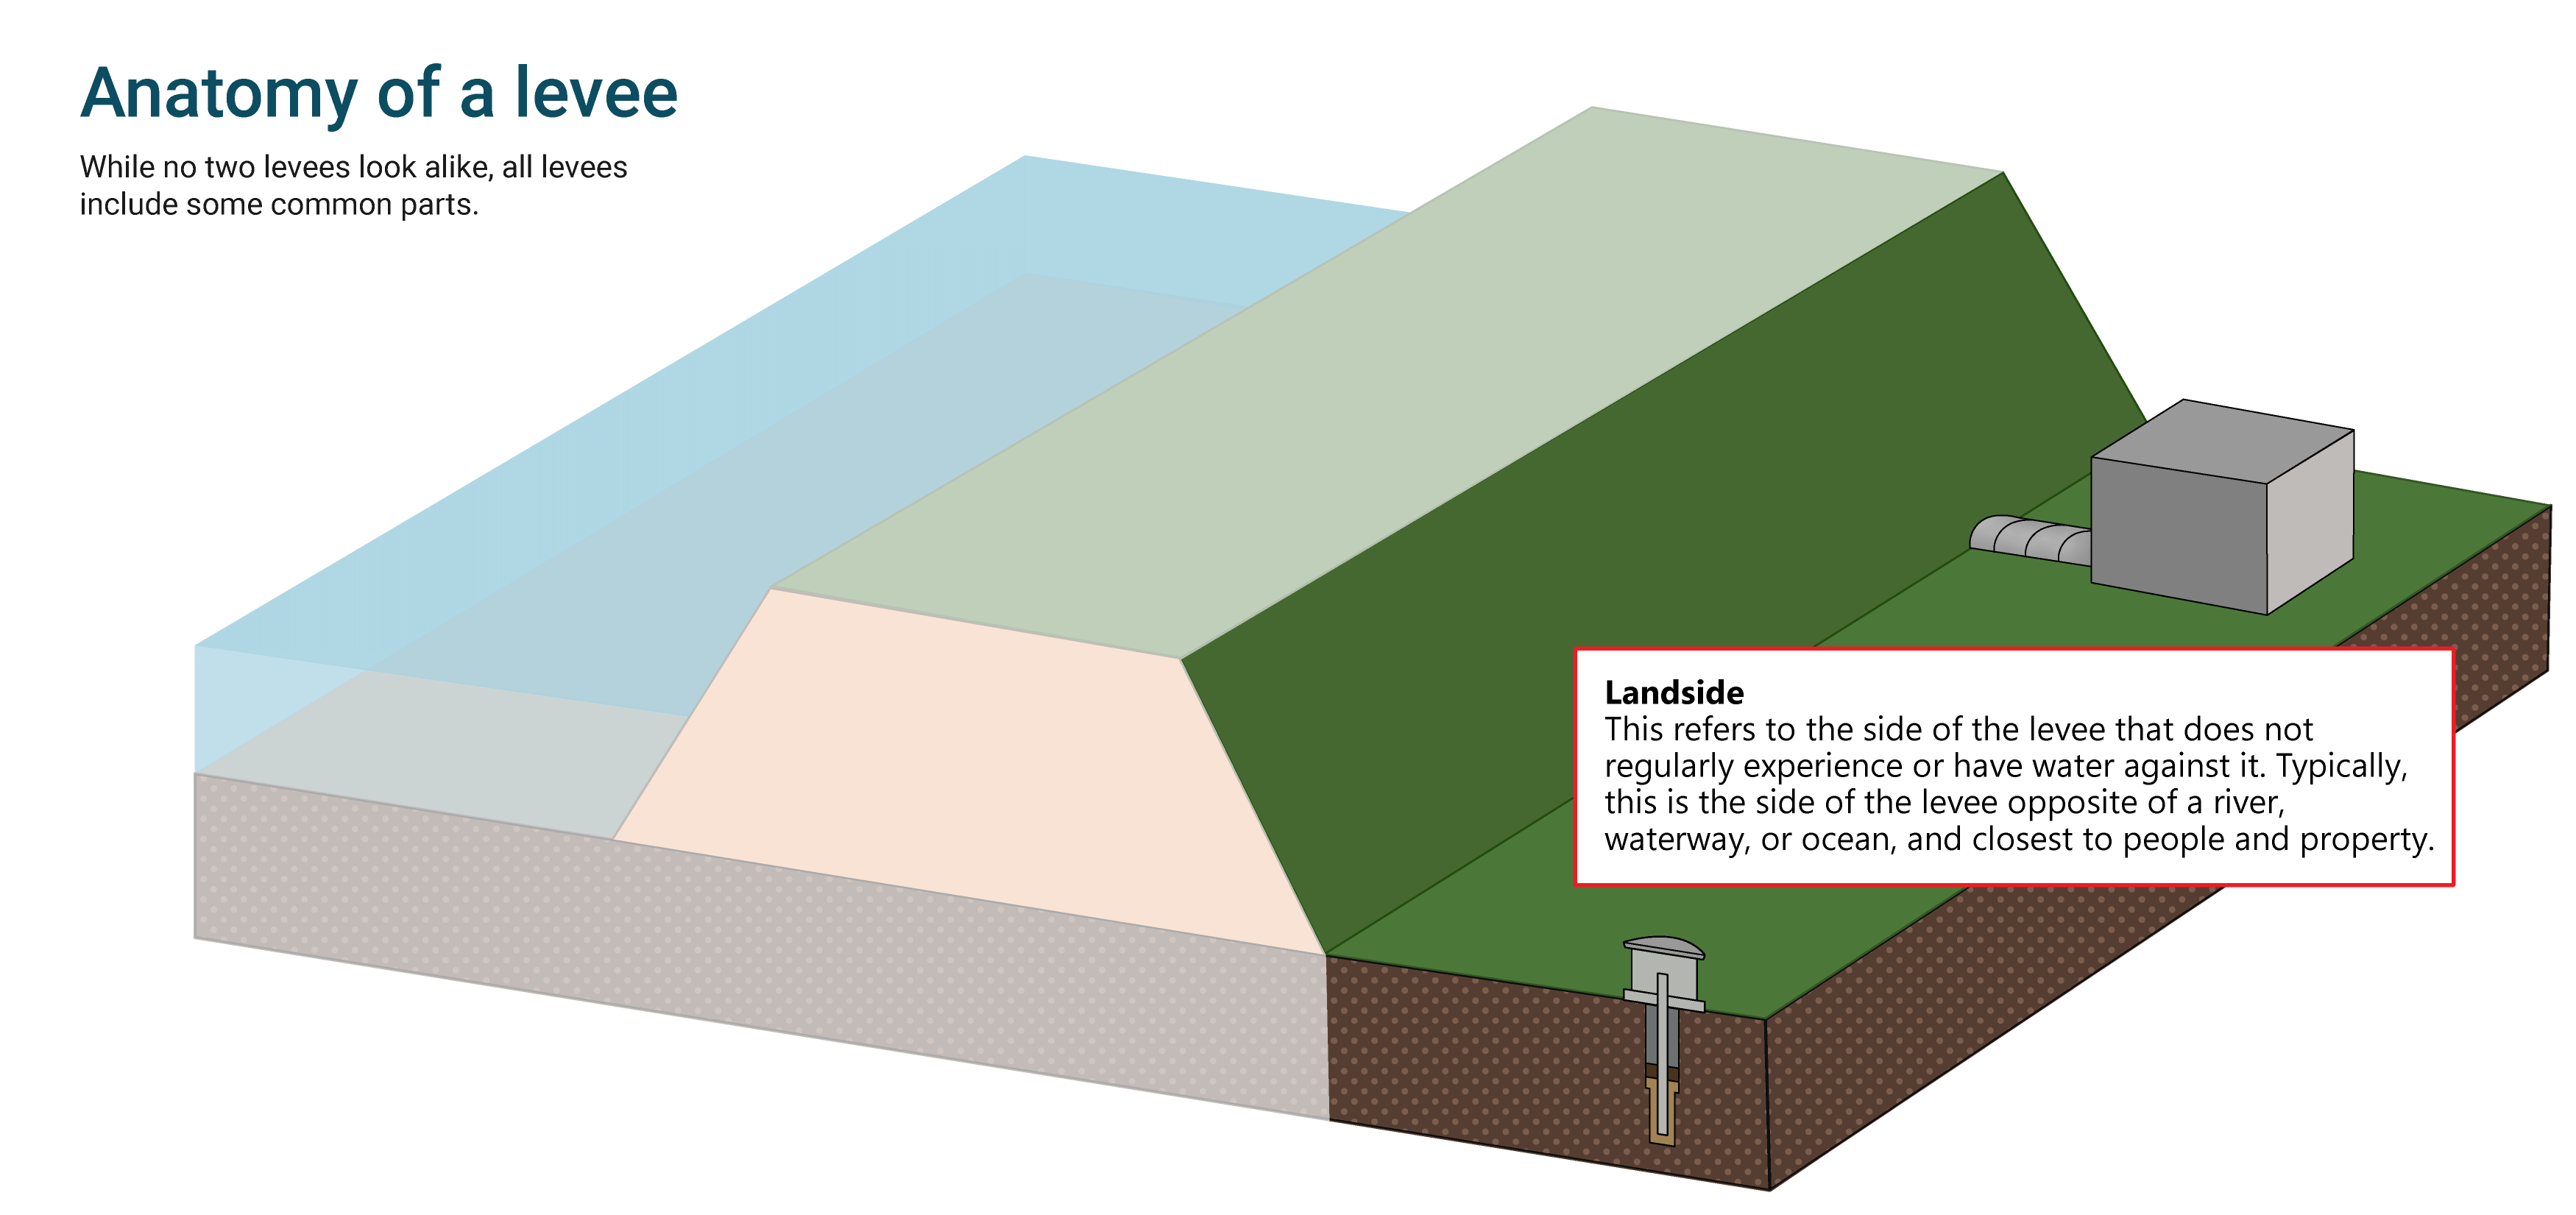 Diagram of a levee system's basic parts - Landside